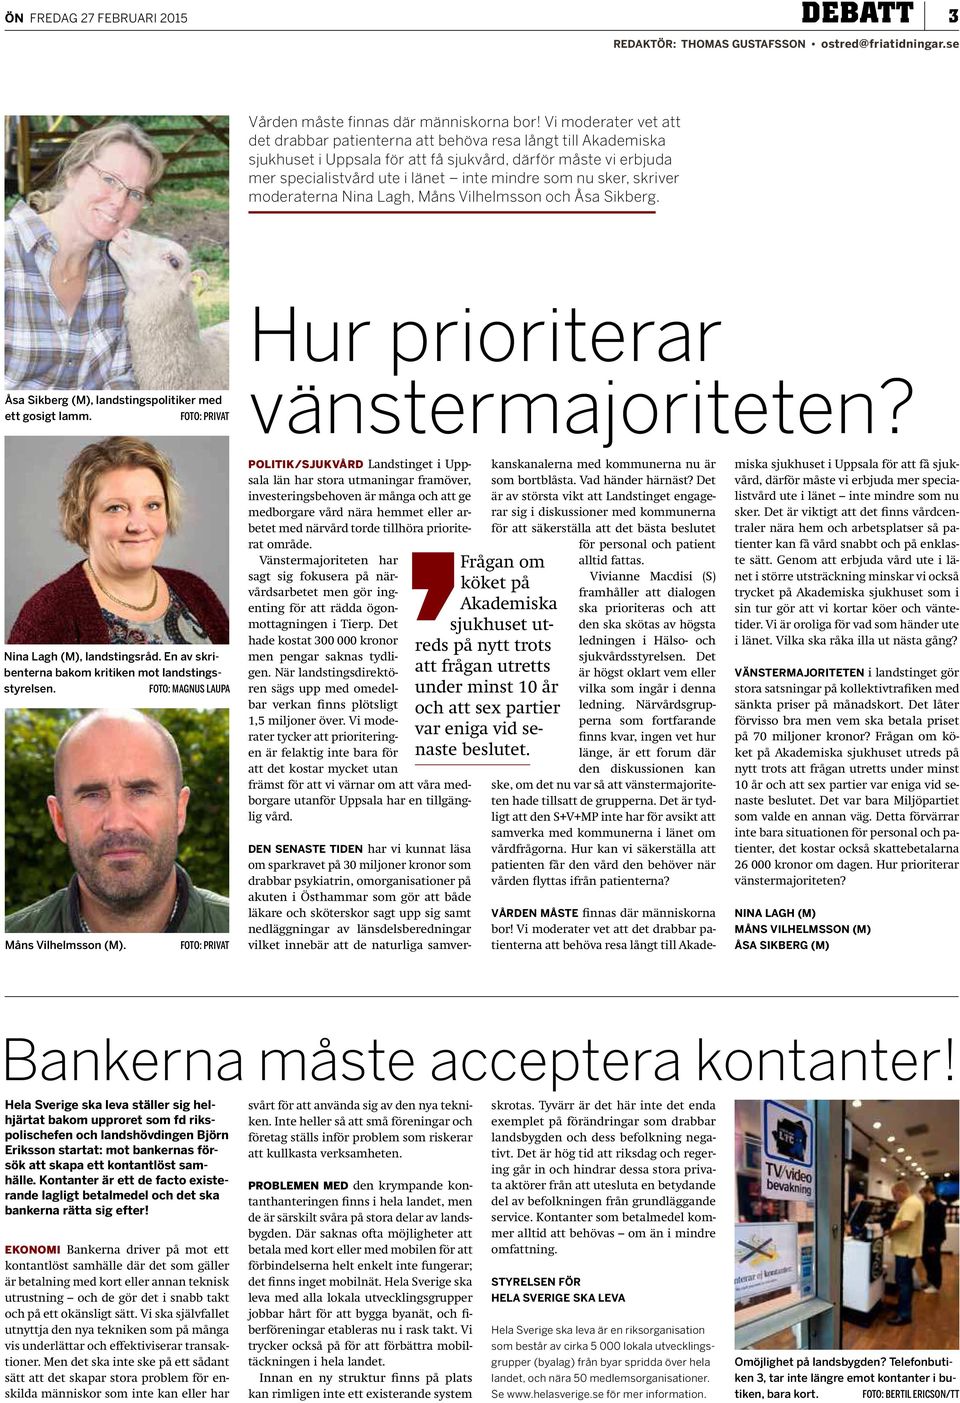 sker, skriver moderaterna Nina Lagh, Måns Vilhelmsson och Åsa Sikberg. Åsa Sikberg (M), landstingspolitiker med ett gosigt lamm. FOTO: PRIVAT Hur prioriterar vänstermajoriteten?